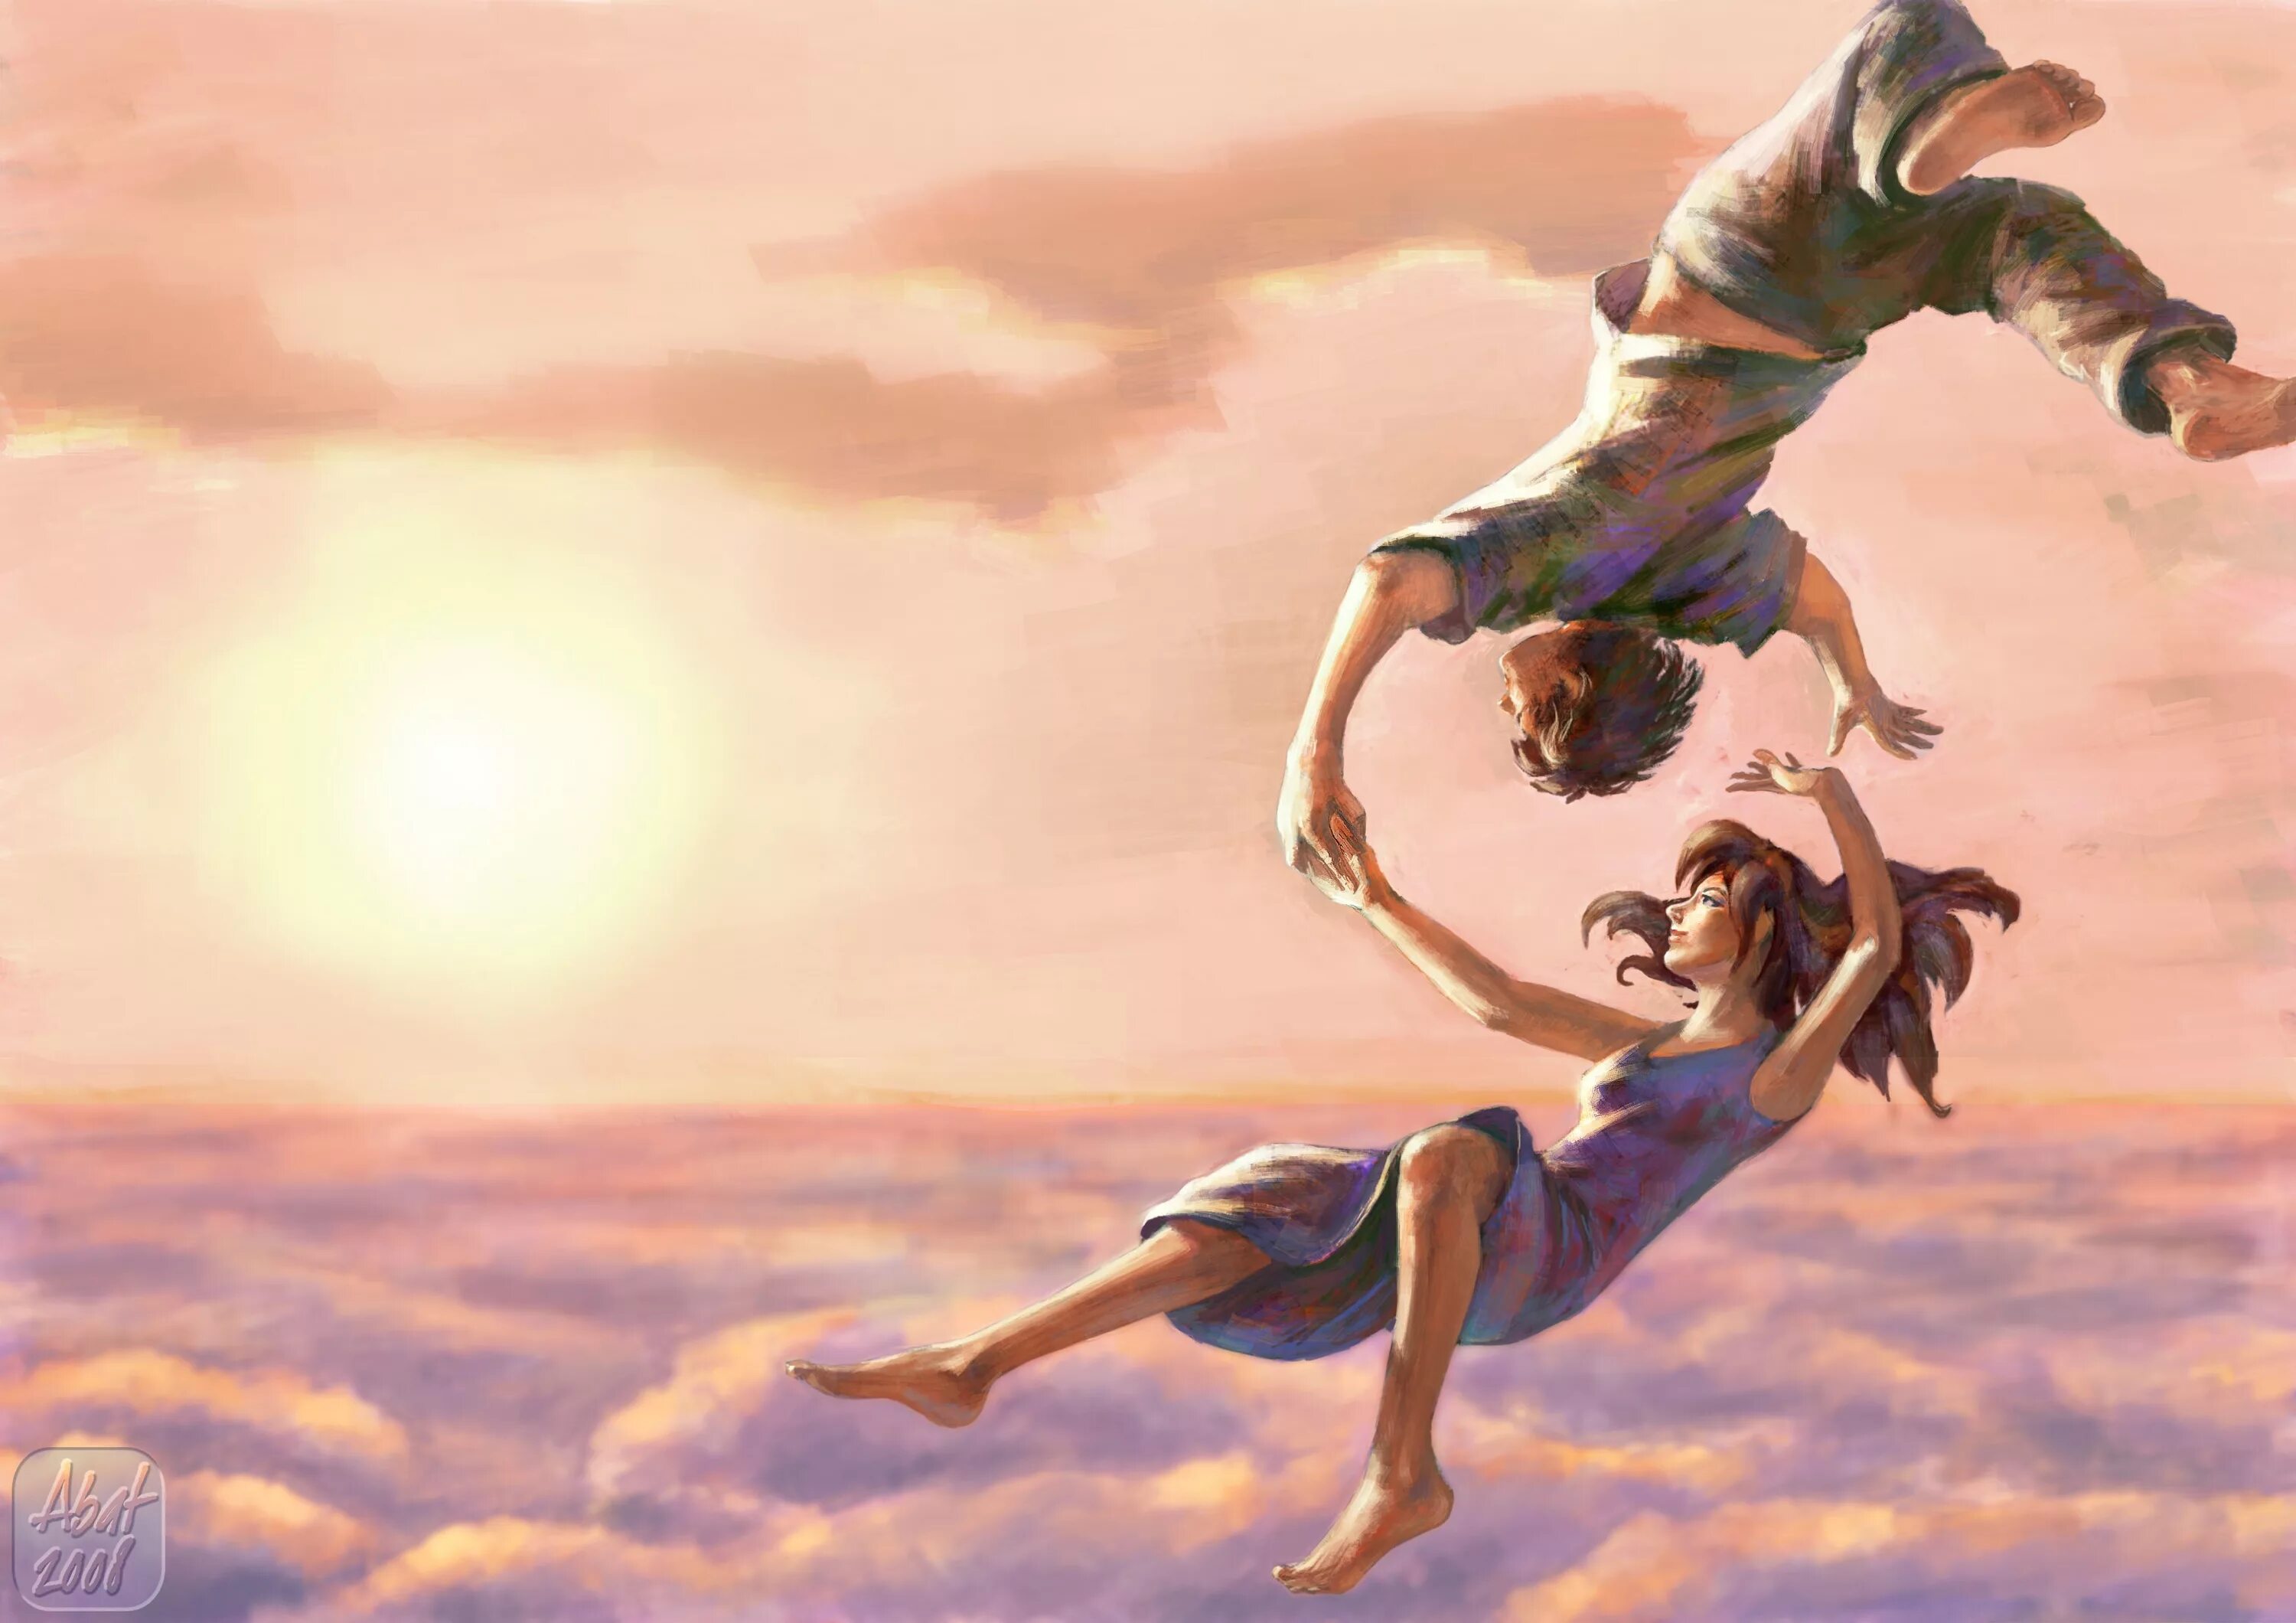 Полетели автор. Девушка в прыжке. Картина счастье. Красивые иллюстрации. Полет души.